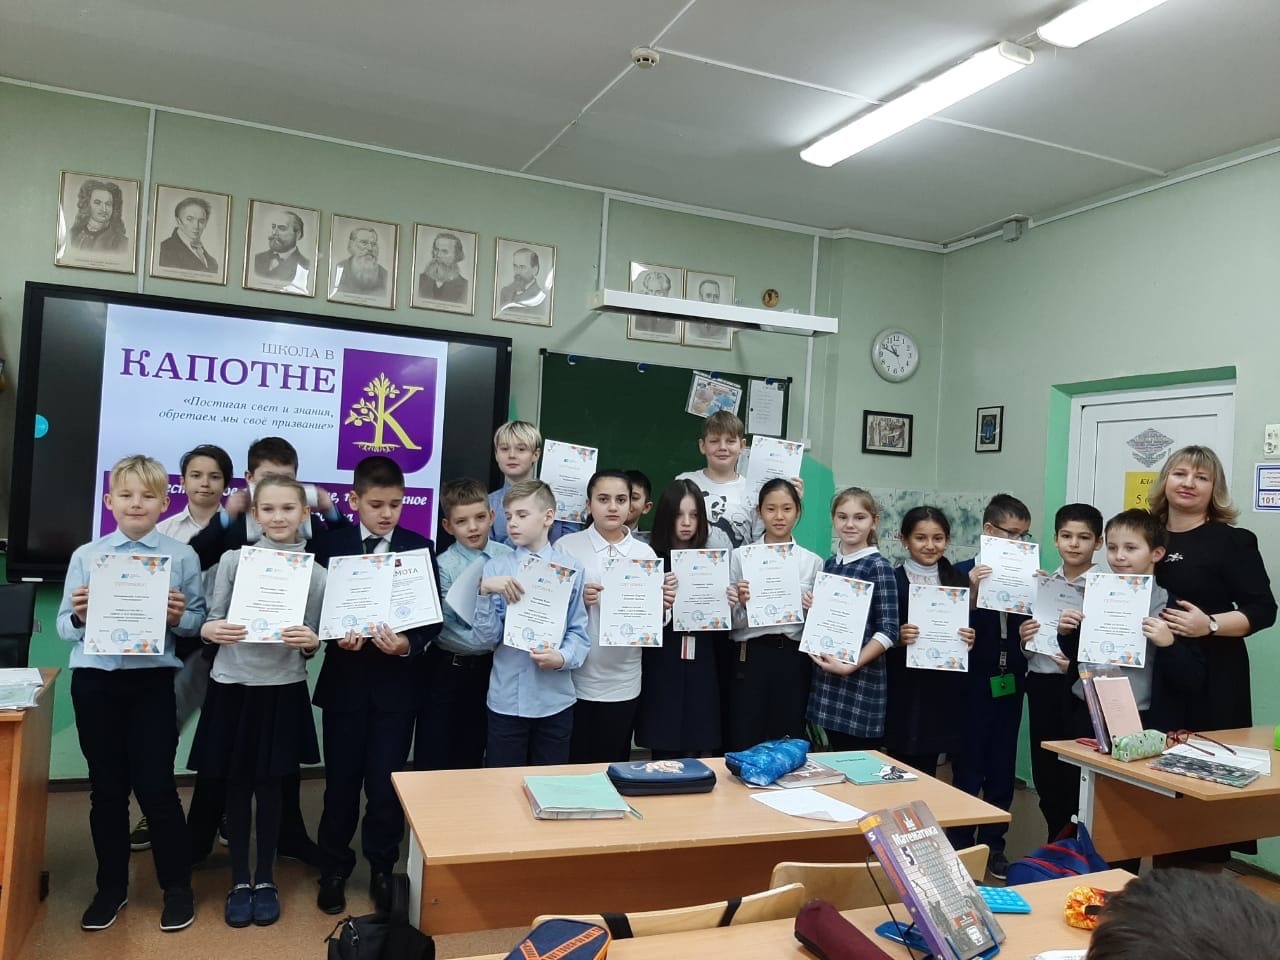 «Школа в Капотне» вошла в Топ-10 самых результативных школ Москвы, фото